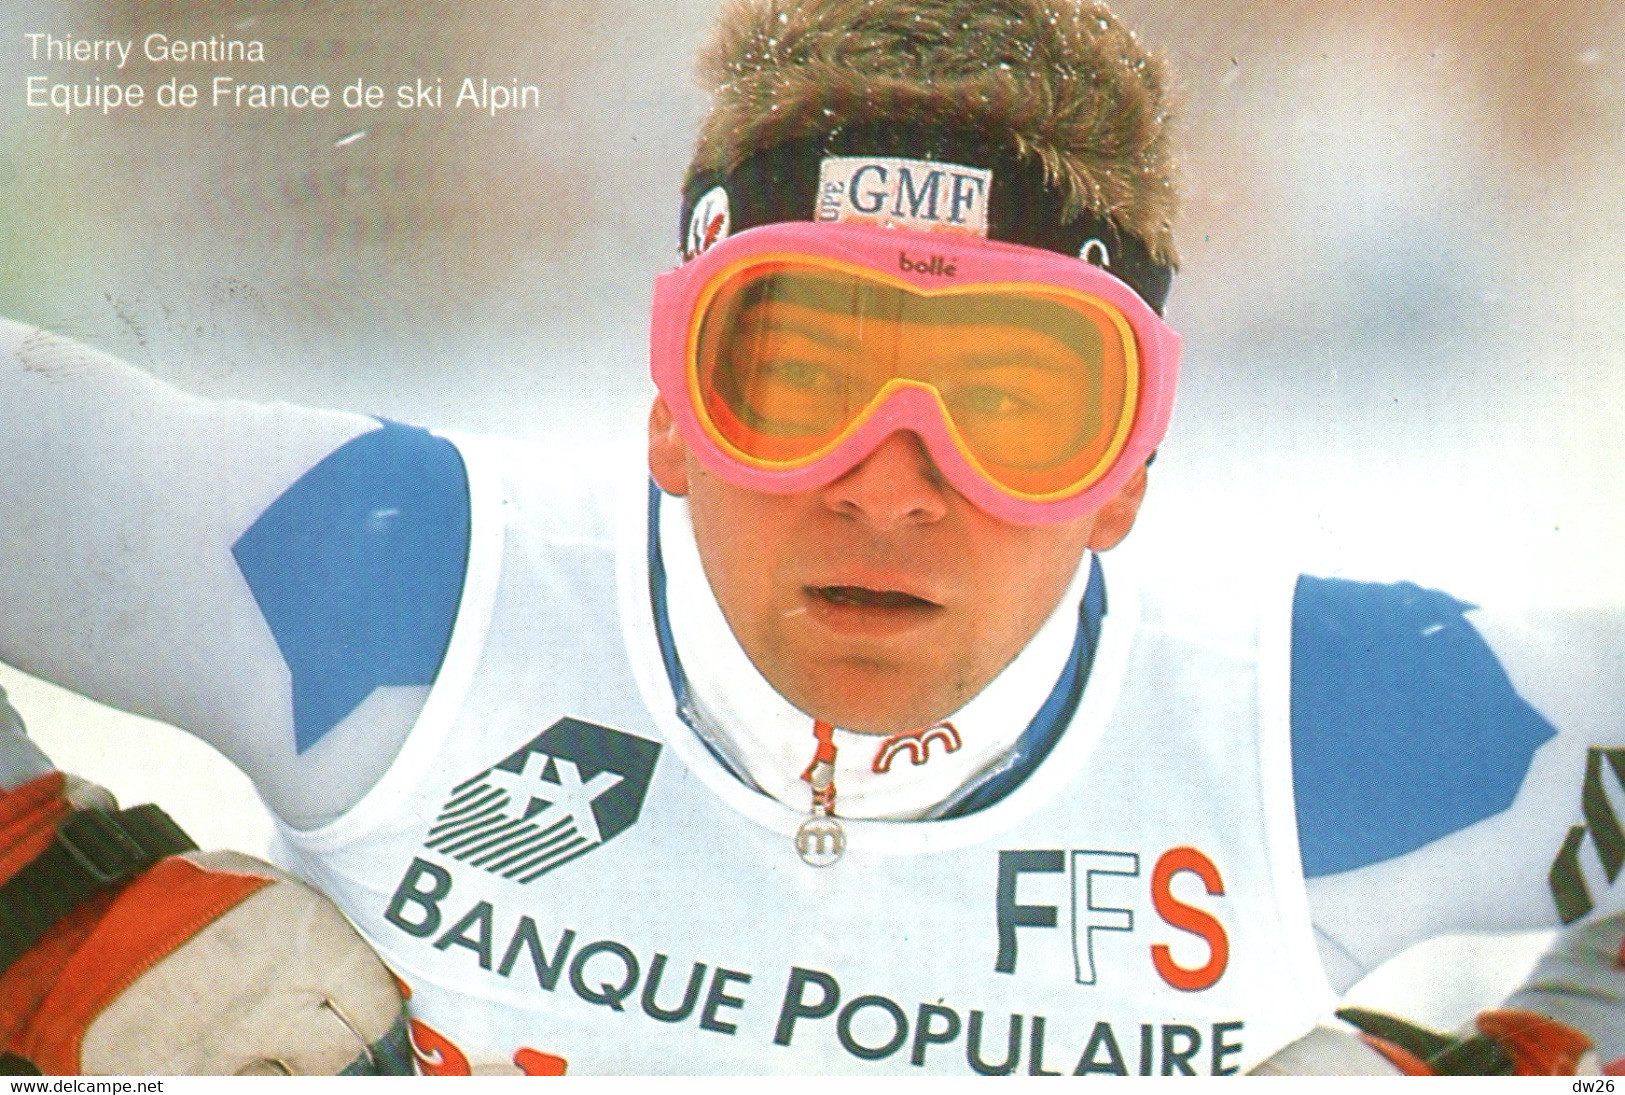 Thierry Gentina - Equipe De France De Ski Alpin (Descente) - Publicité Banque Populaire 1992 - Arti Marziali